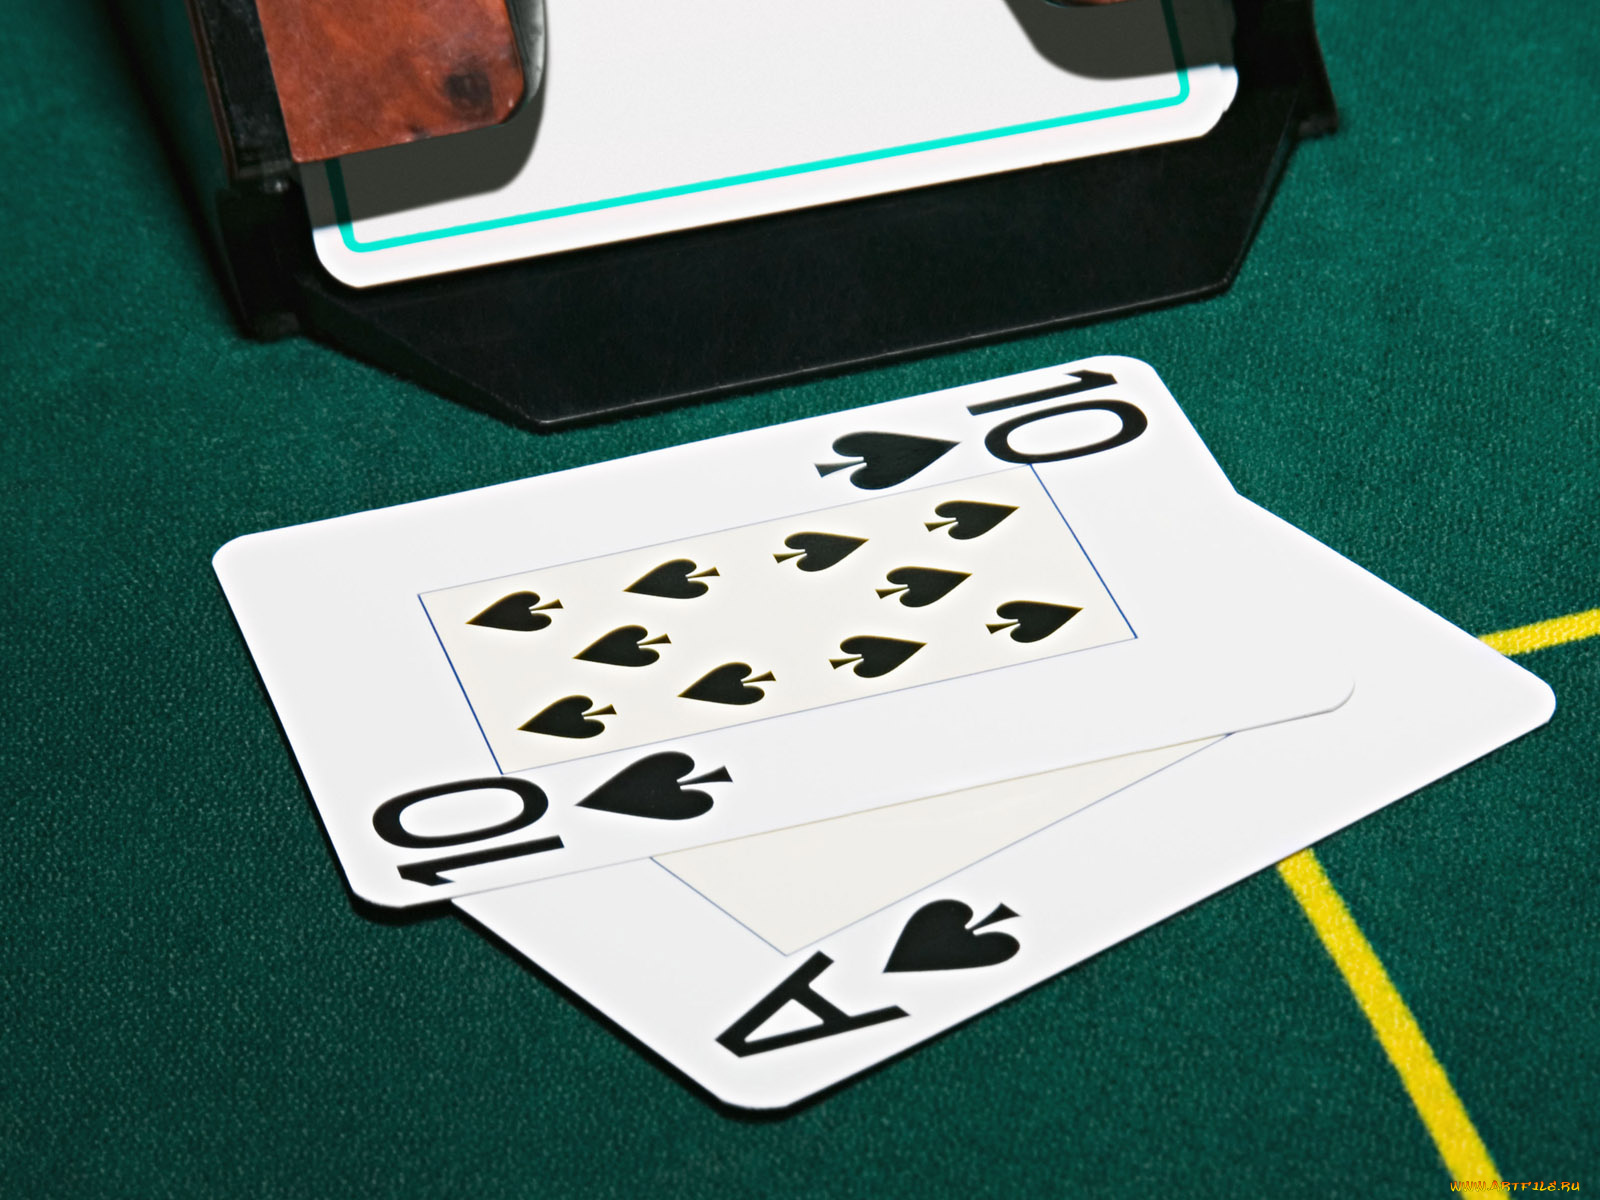 Очко в карты играть вулкан игровые автоматы онлайн клуб казино играть бесплатно